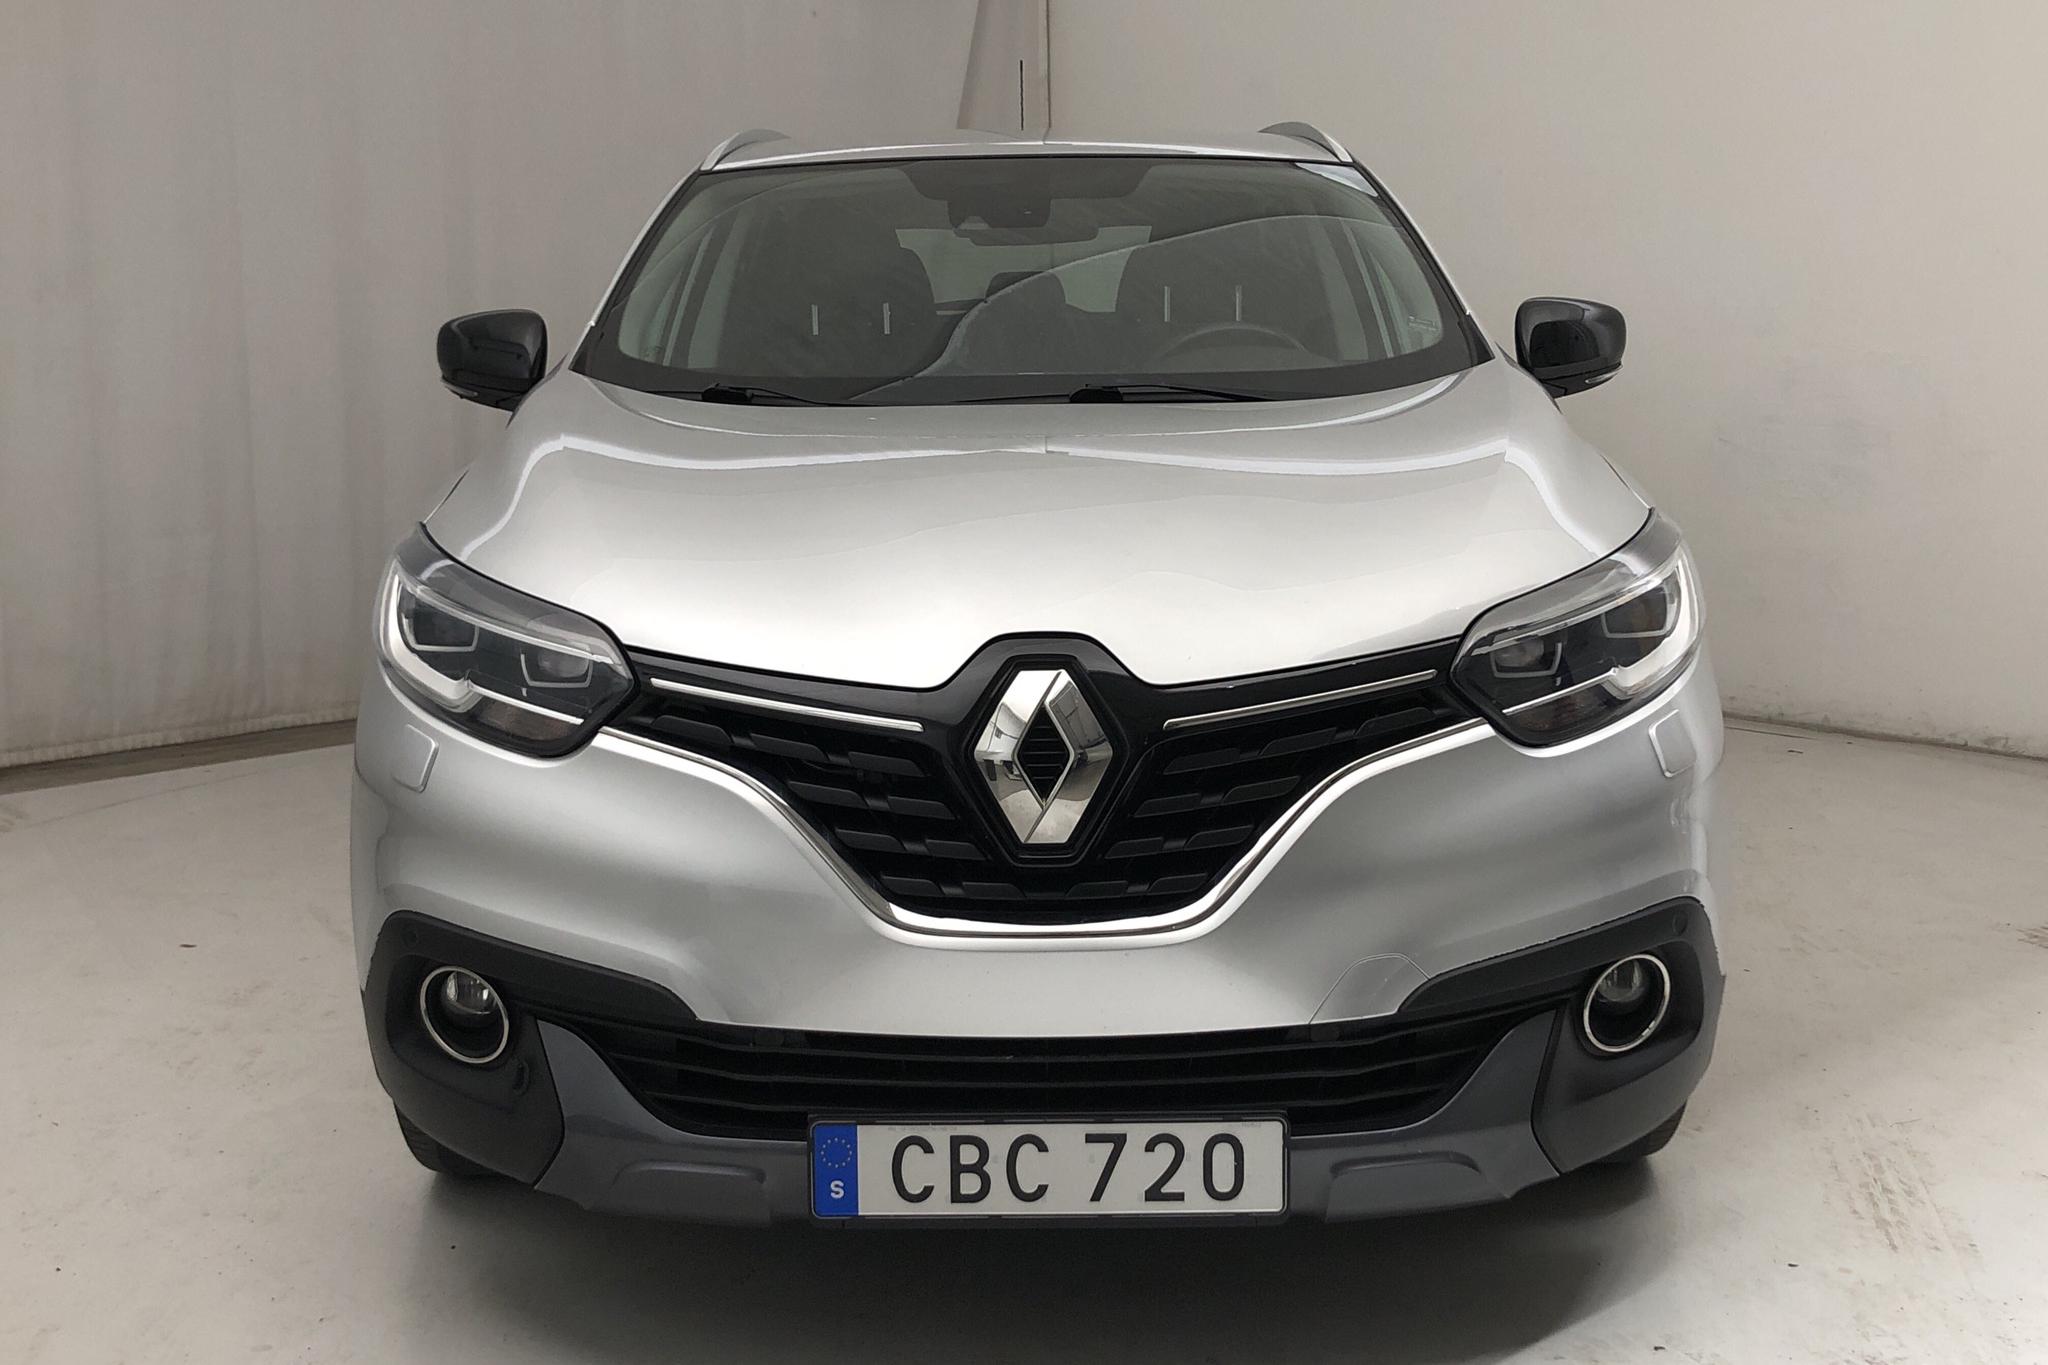 Renault Kadjar 1.6 dCi 4WD (130hk) - 4 801 mil - Manuell - silver - 2017